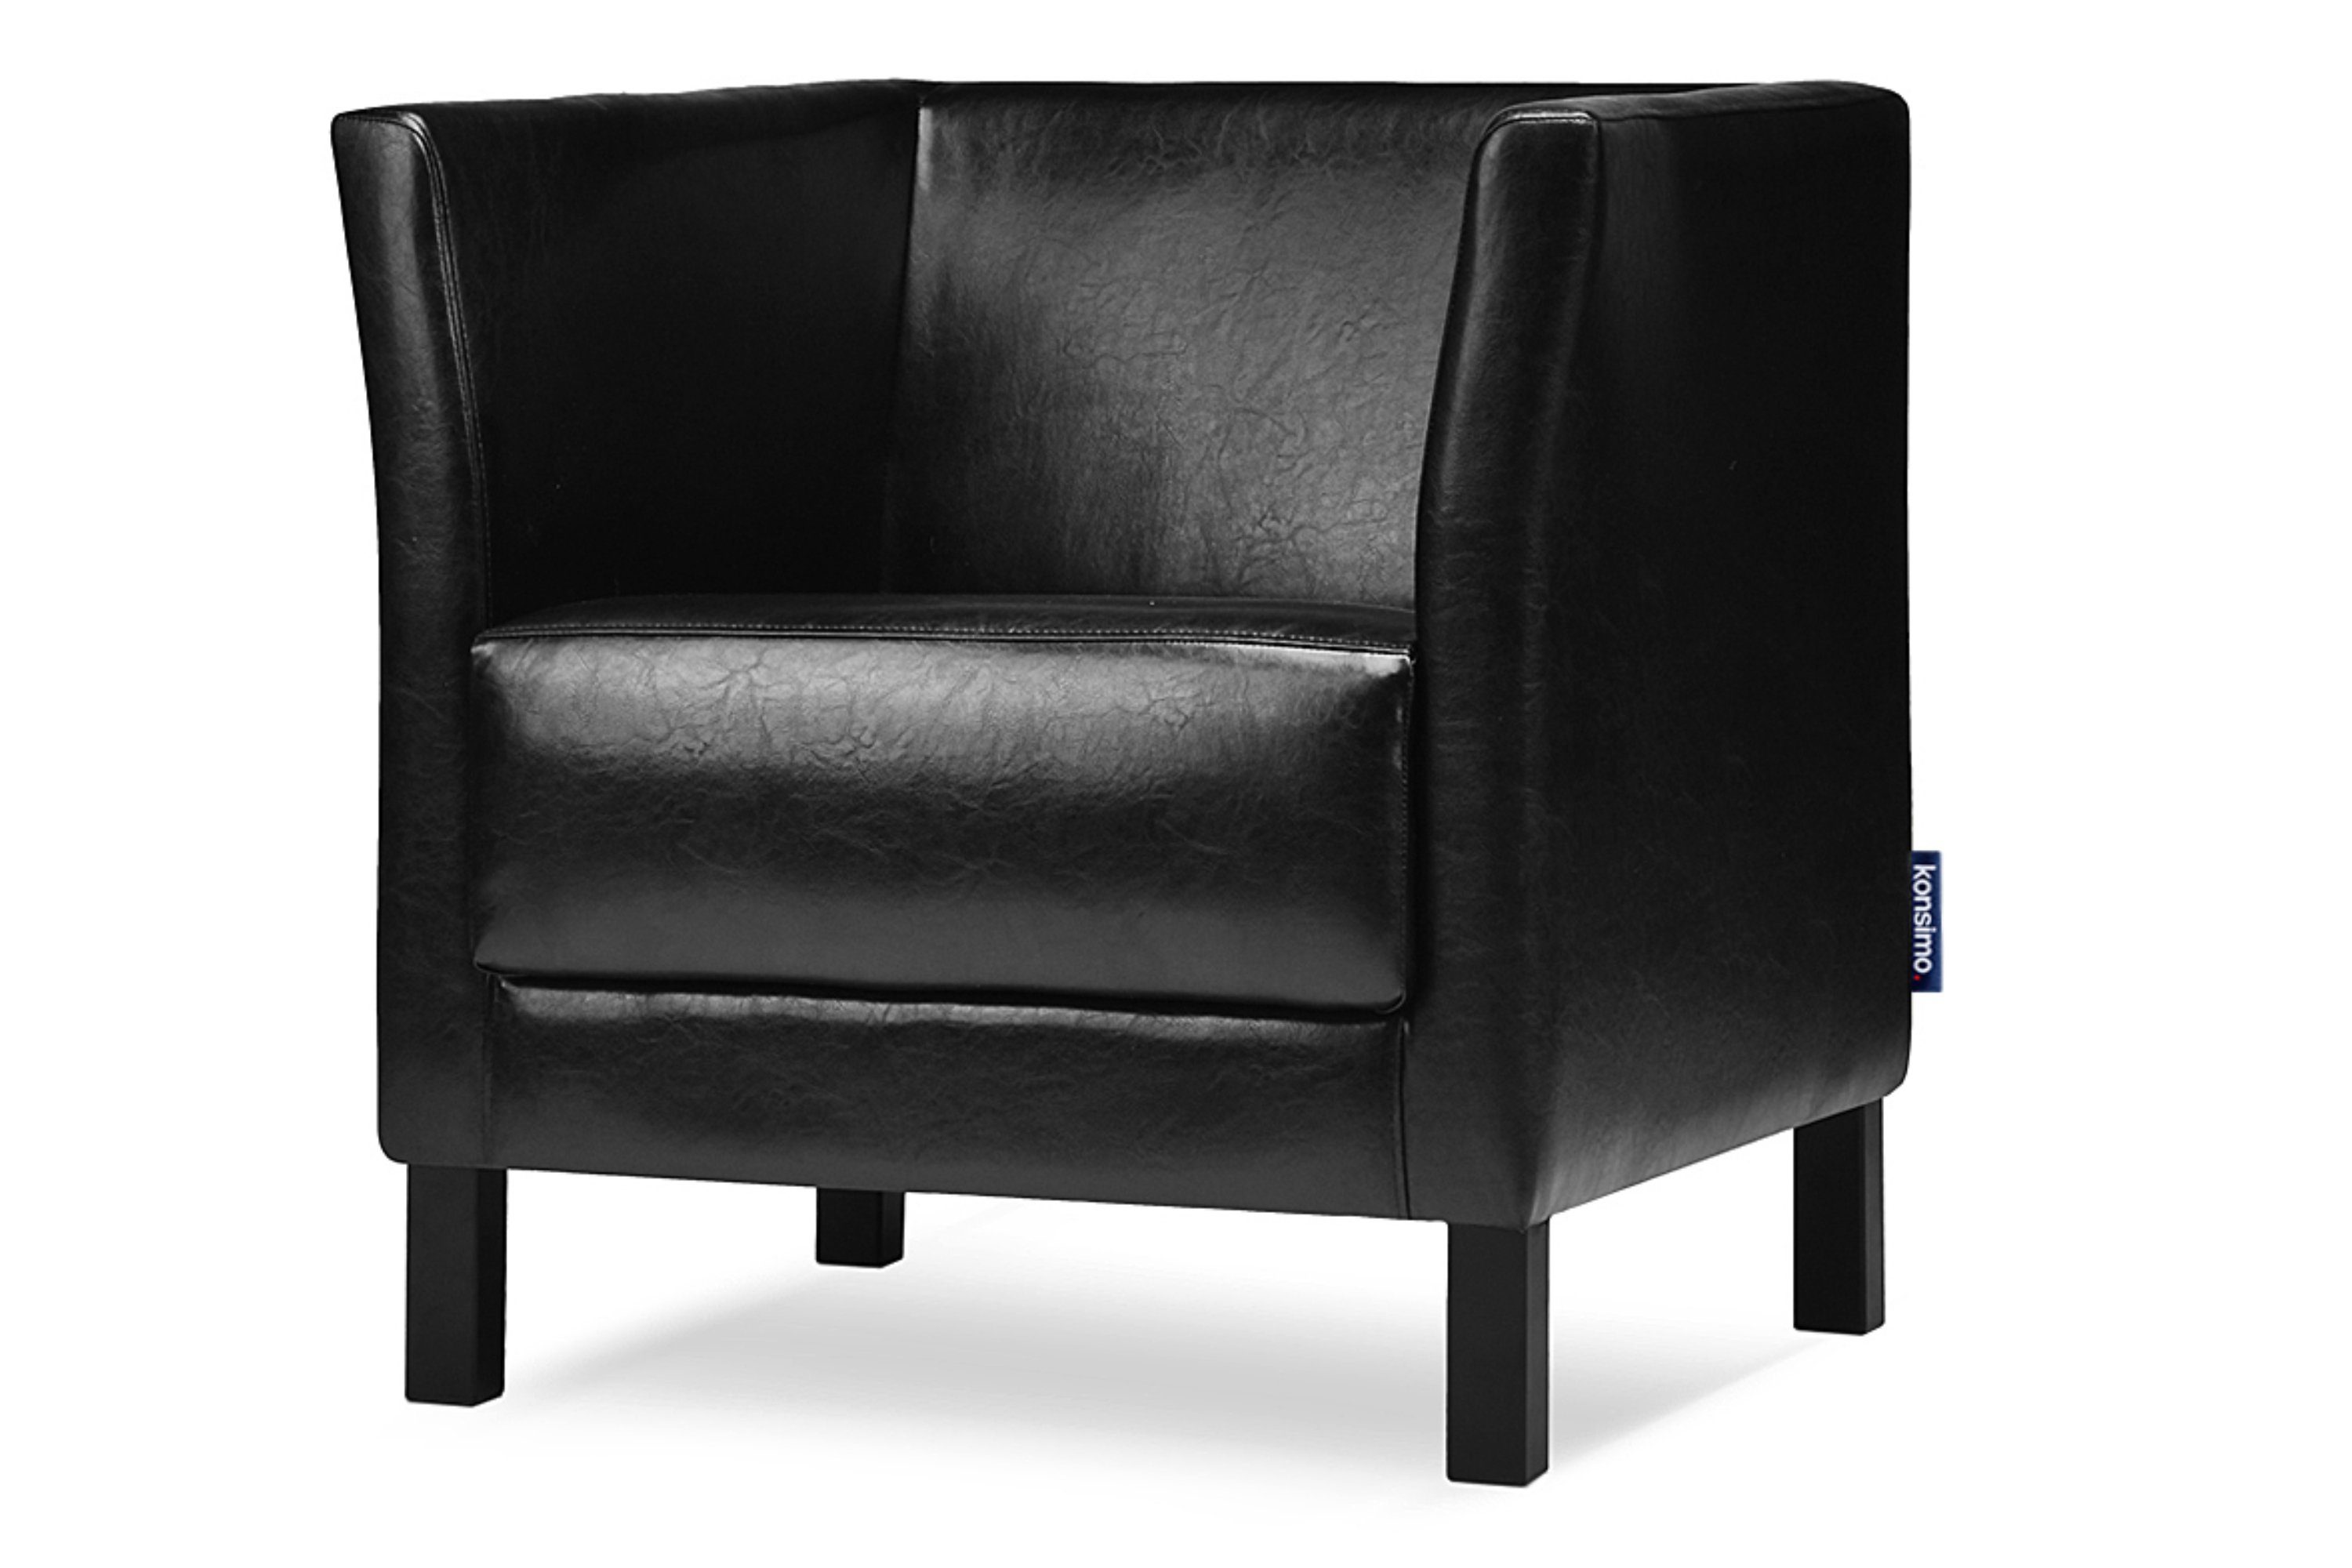 Konsimo Sessel ESPECTO Sessel, hohe Massivholzbeine, weiche Sitzfläche und hohe Rückenlehne, Kunstleder schwarz | schwarz | schwarz